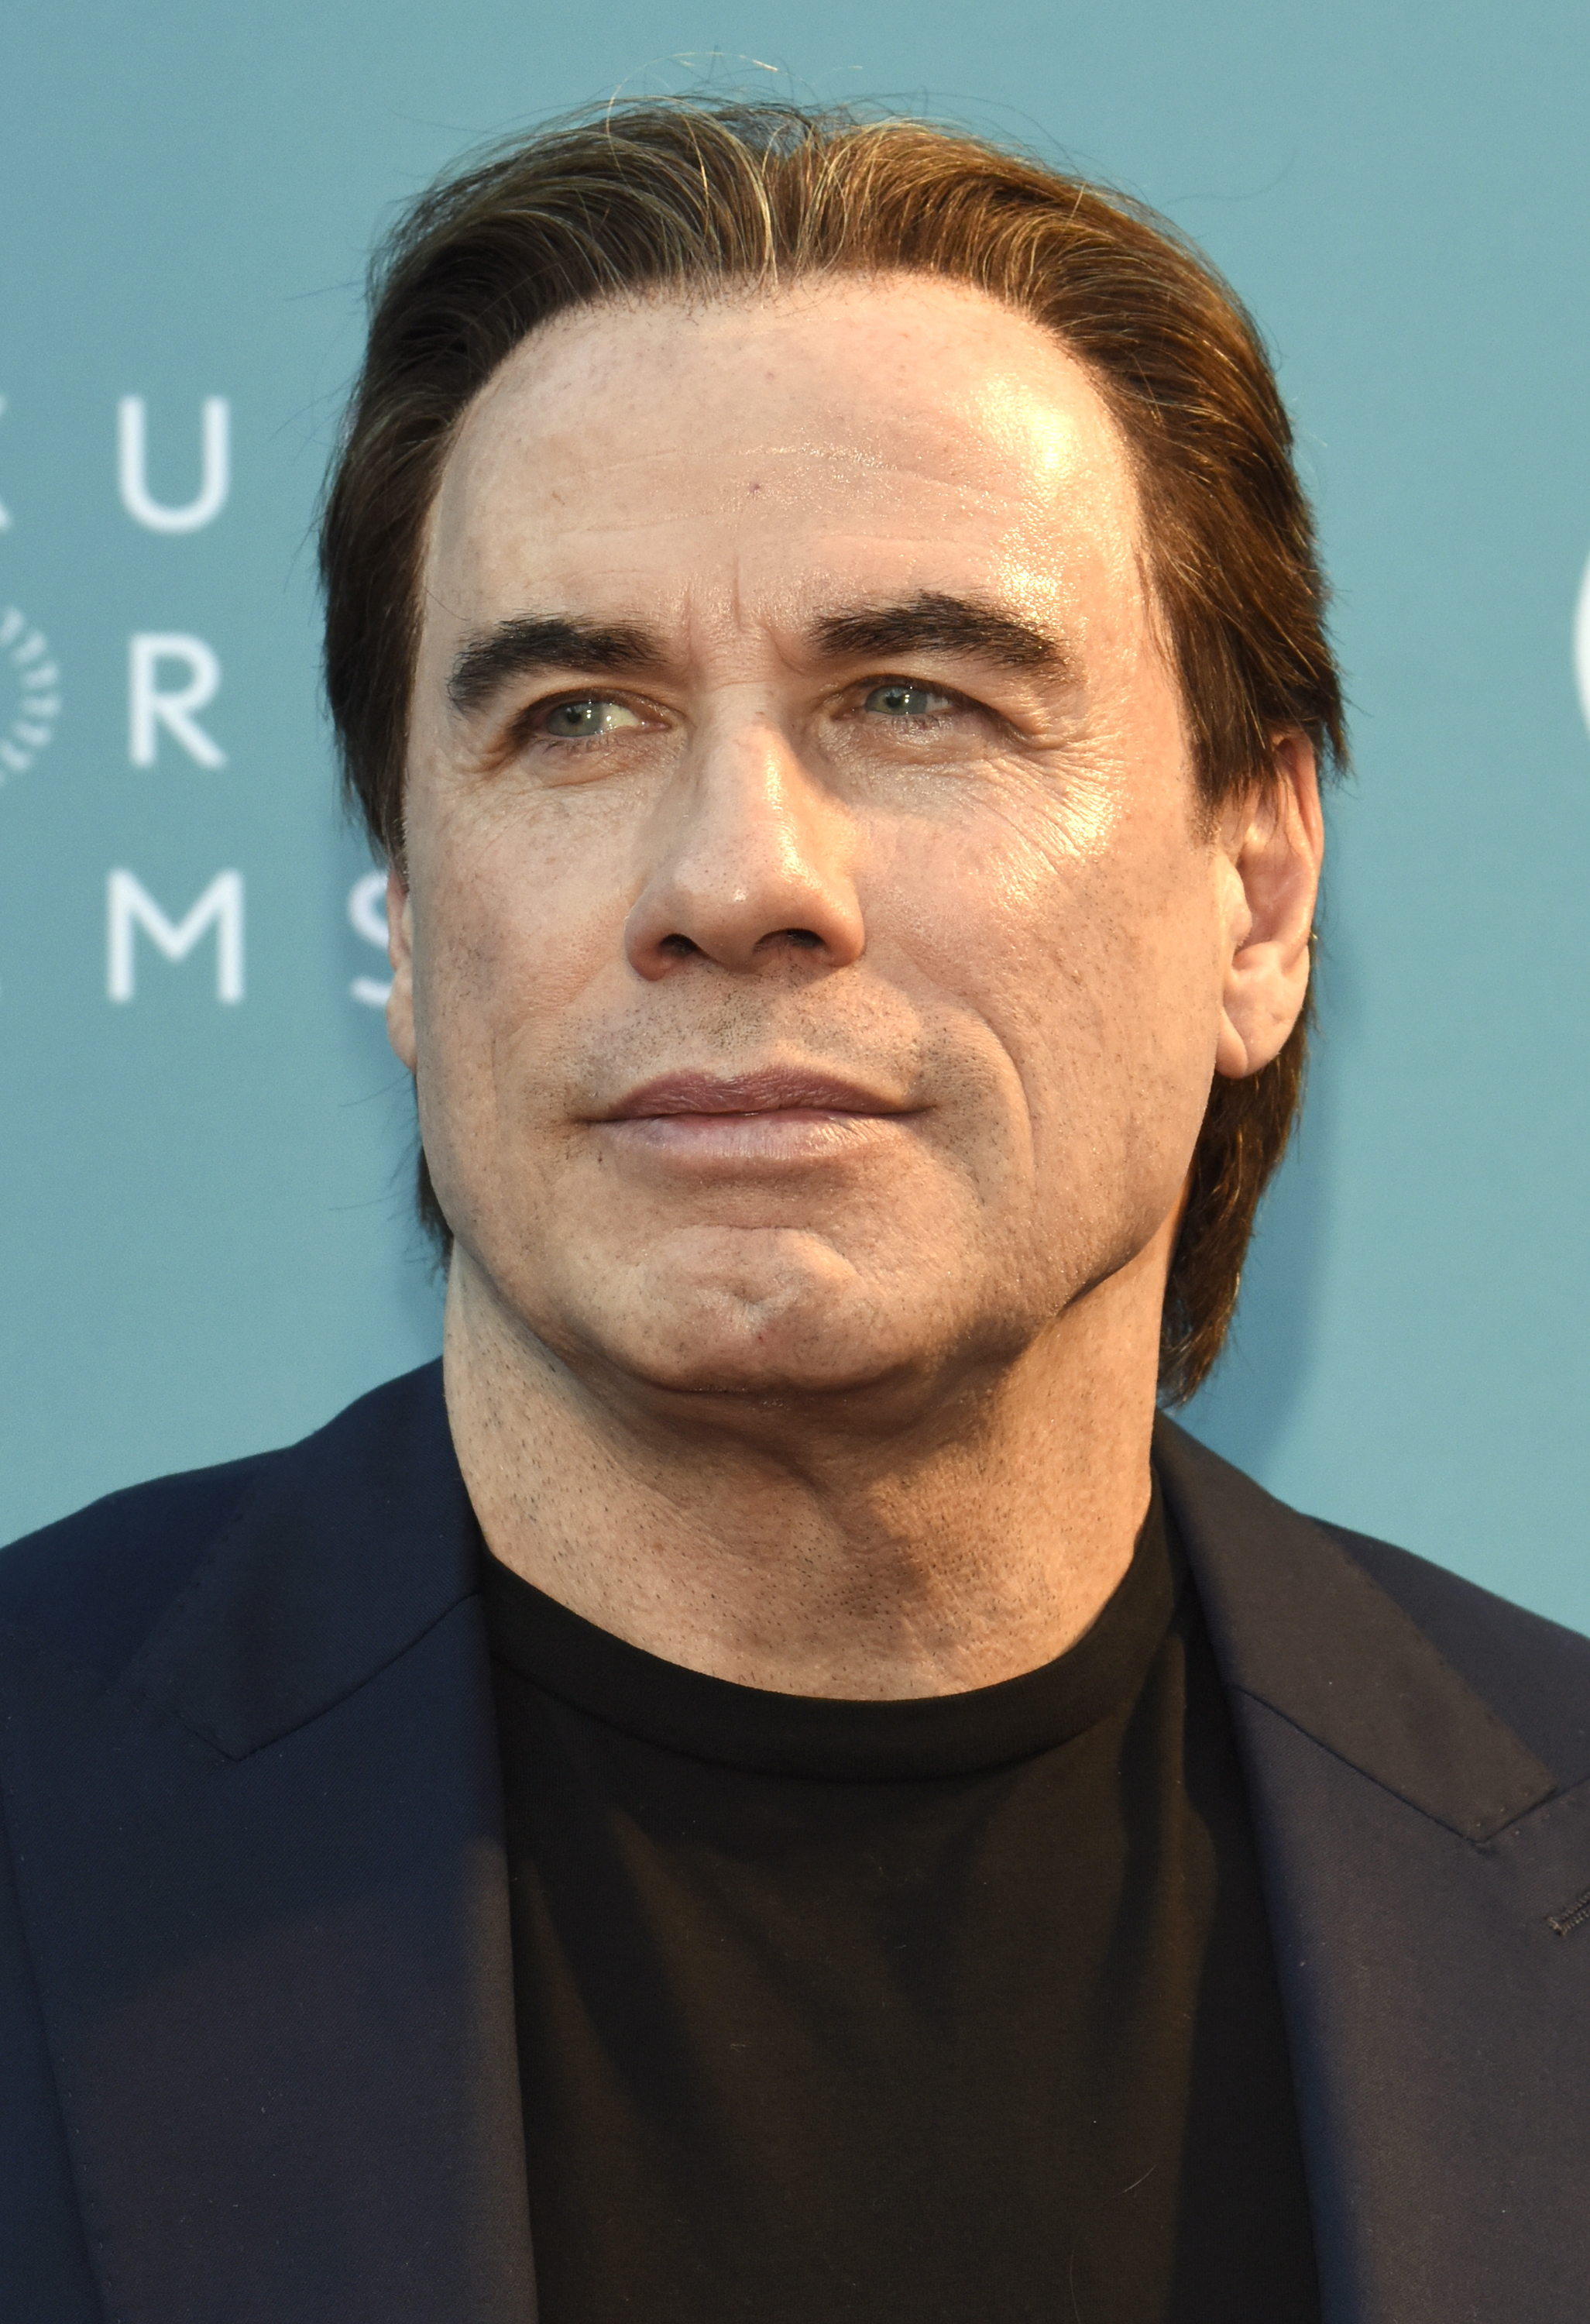 John Travolta en el estreno mundial de "Life on the Line" durante el Festival de Cine de Napa Valley 2015 el 14 de noviembre de 2015, en California. | Fuente: Getty Images